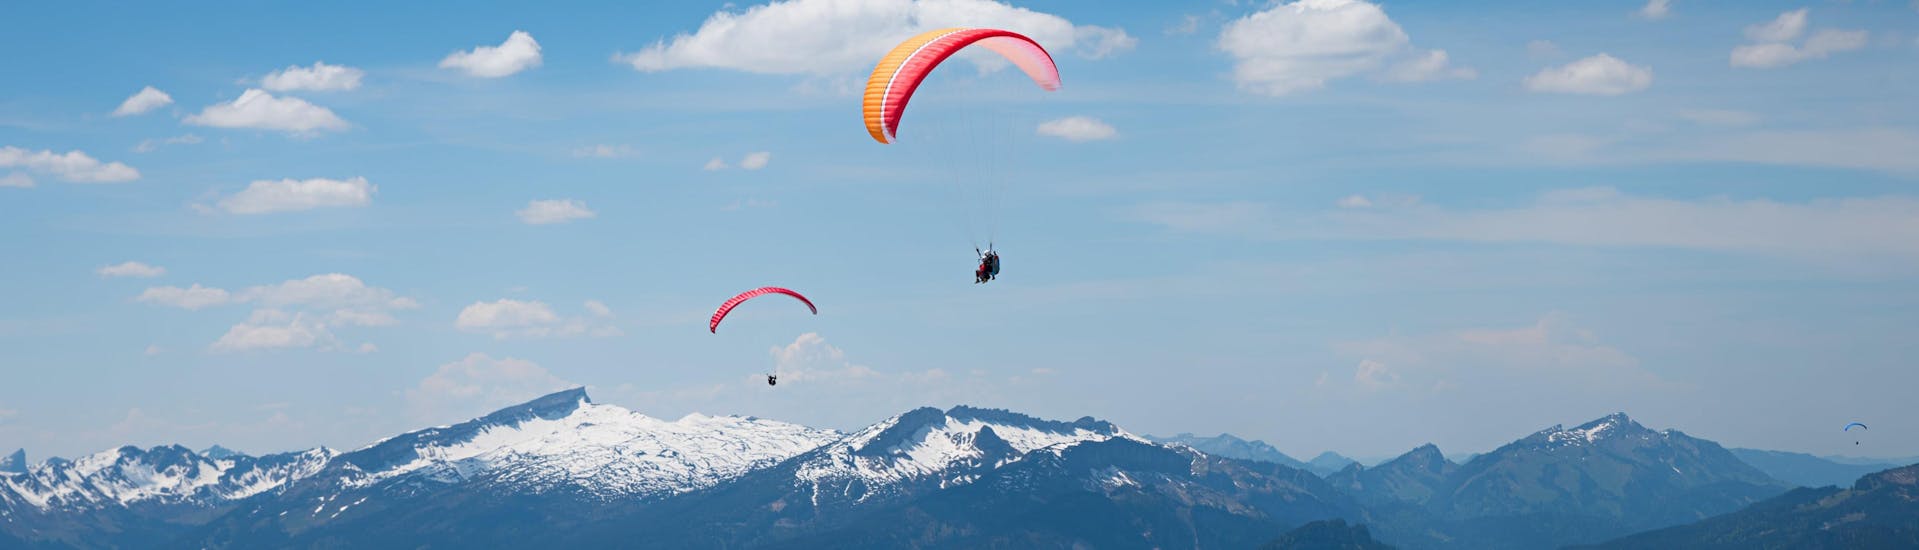 Oberstdorf: Een tandemvlucht vindt plaats in een van de hotspots voor paragliding.